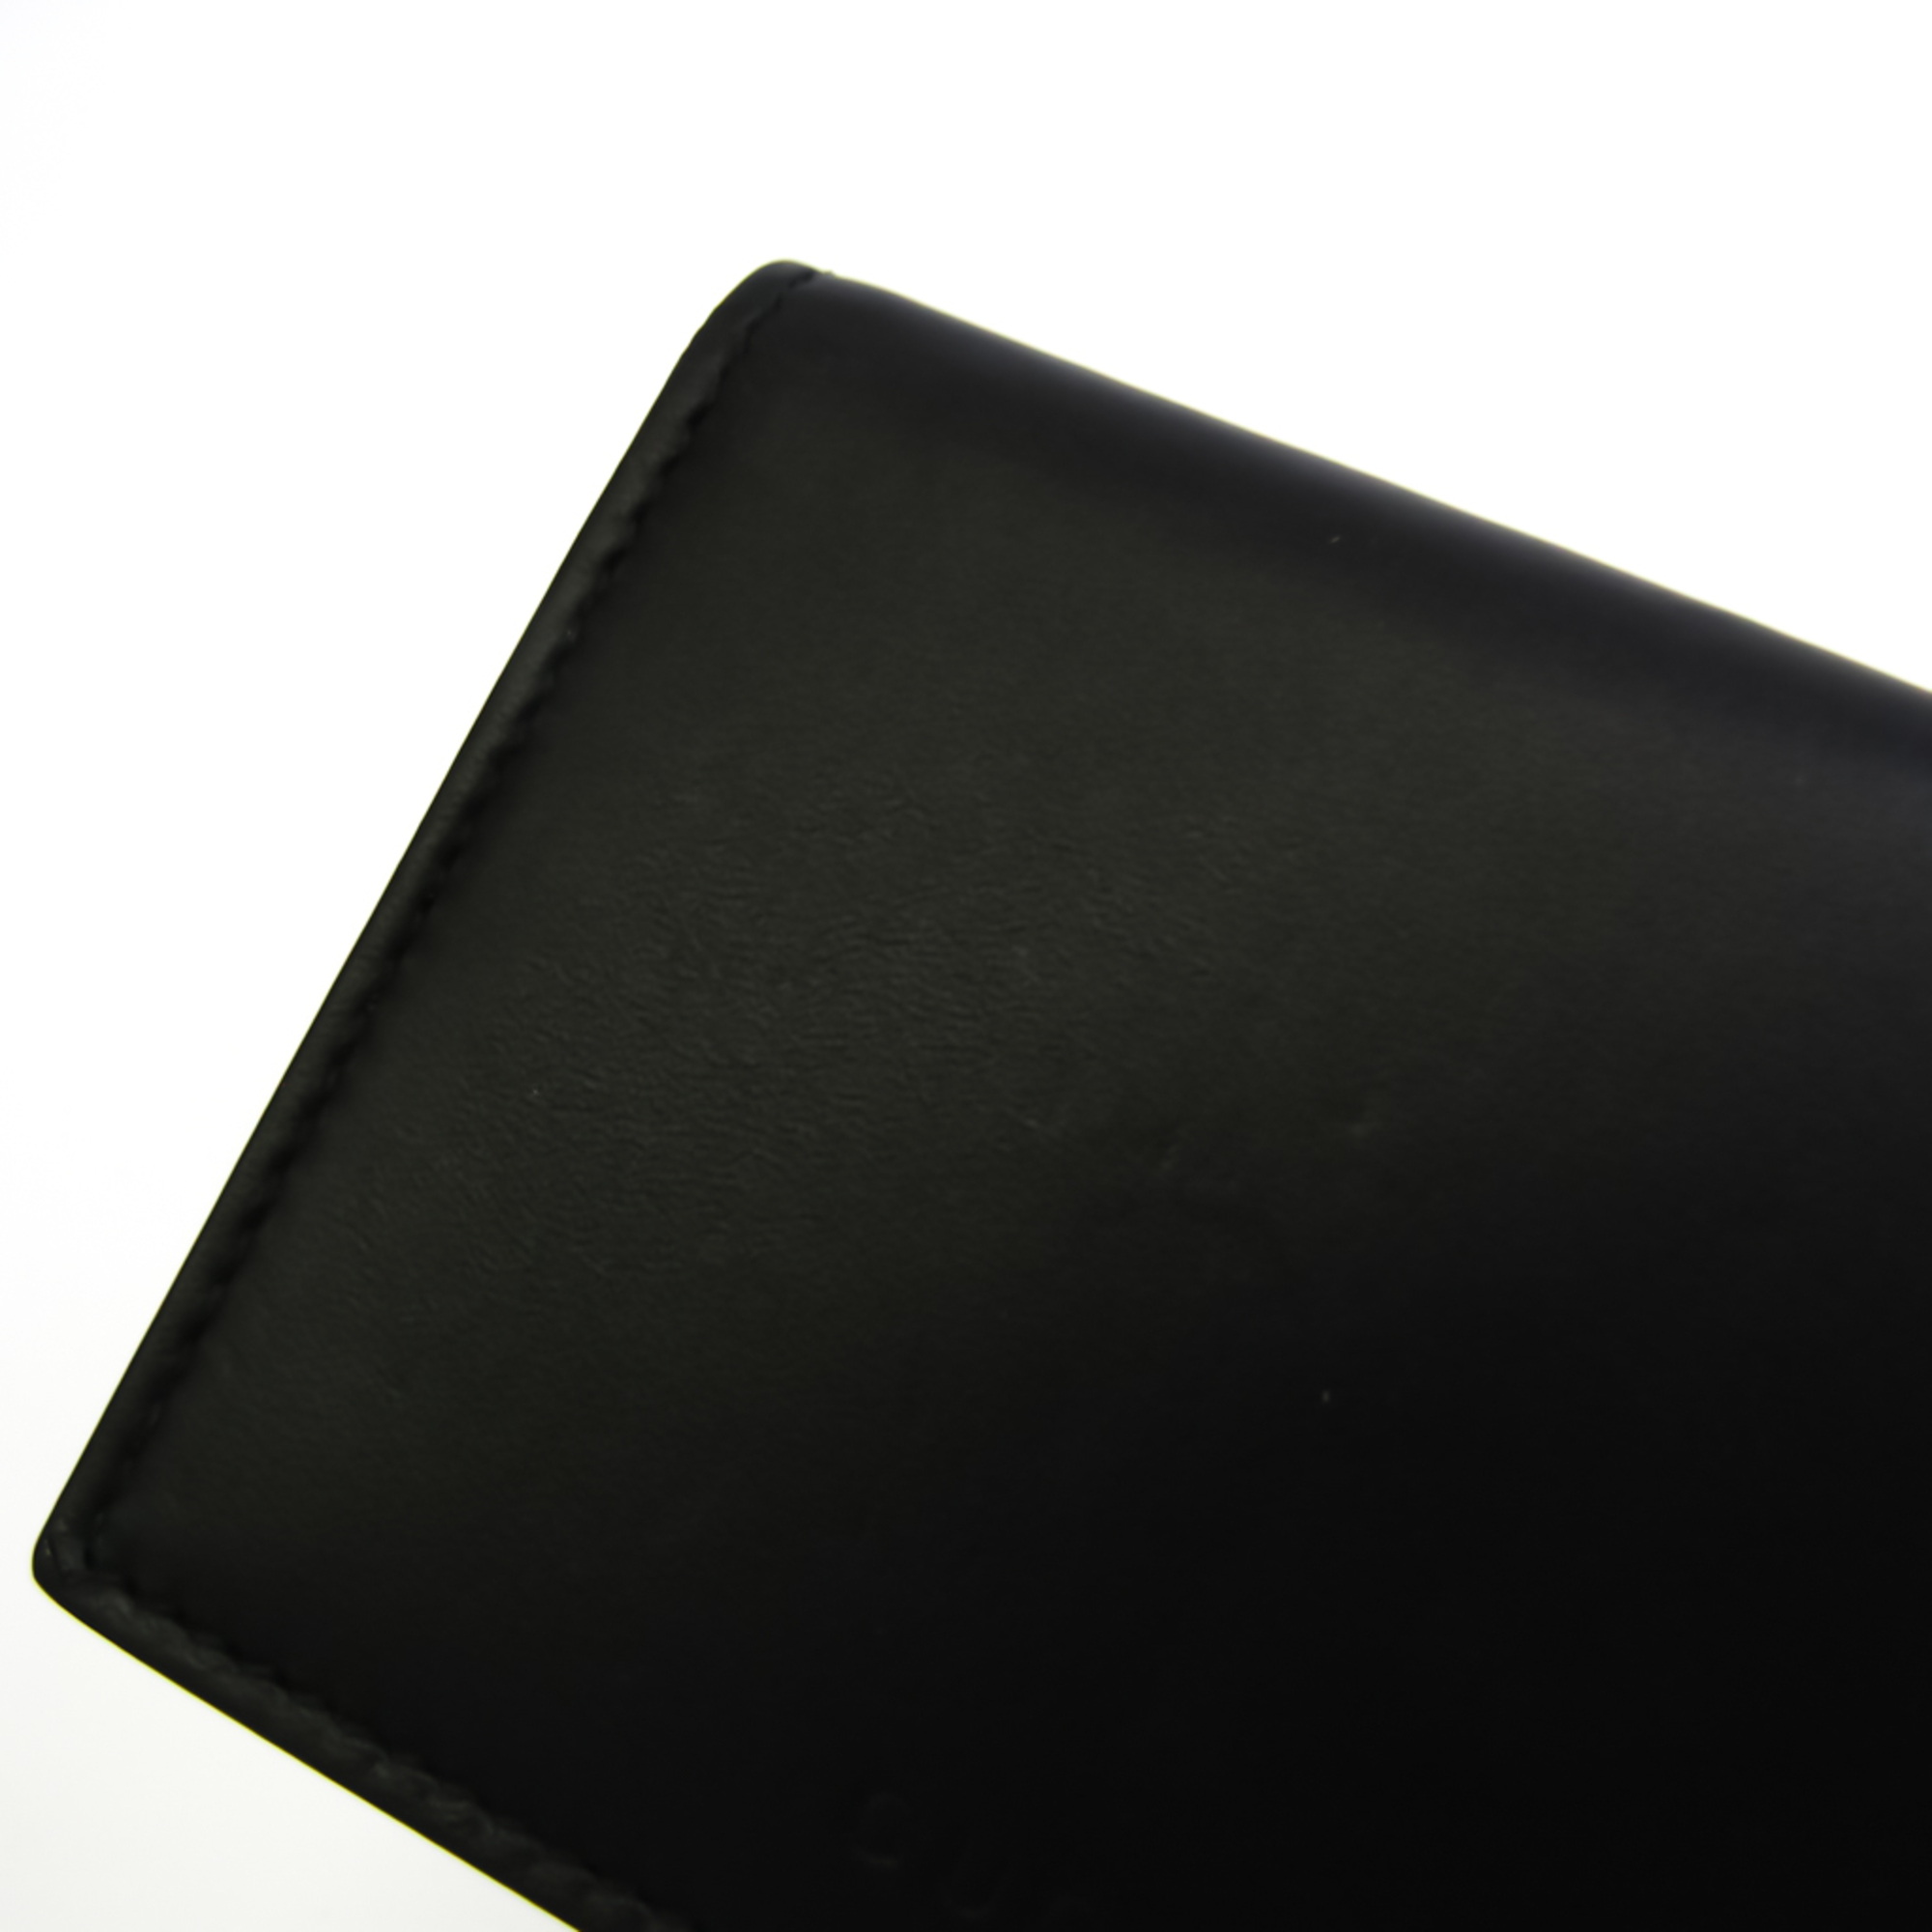 Gucci Guccissima 410120 Leather Card Case Black